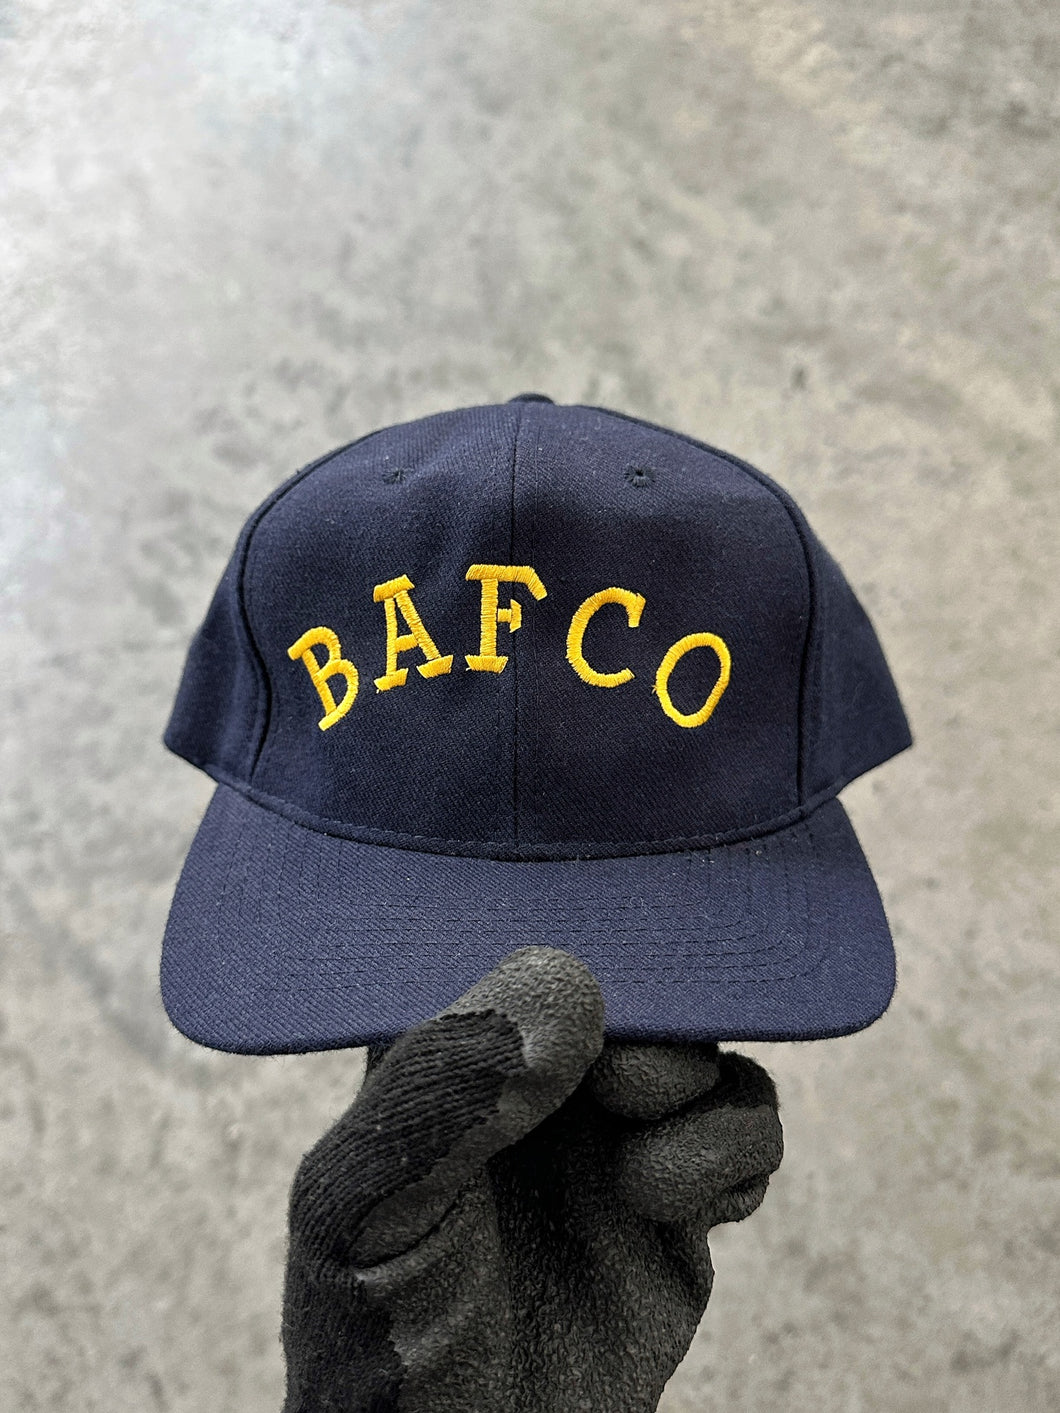 NAVY “BAFCO” HAT - 1980S